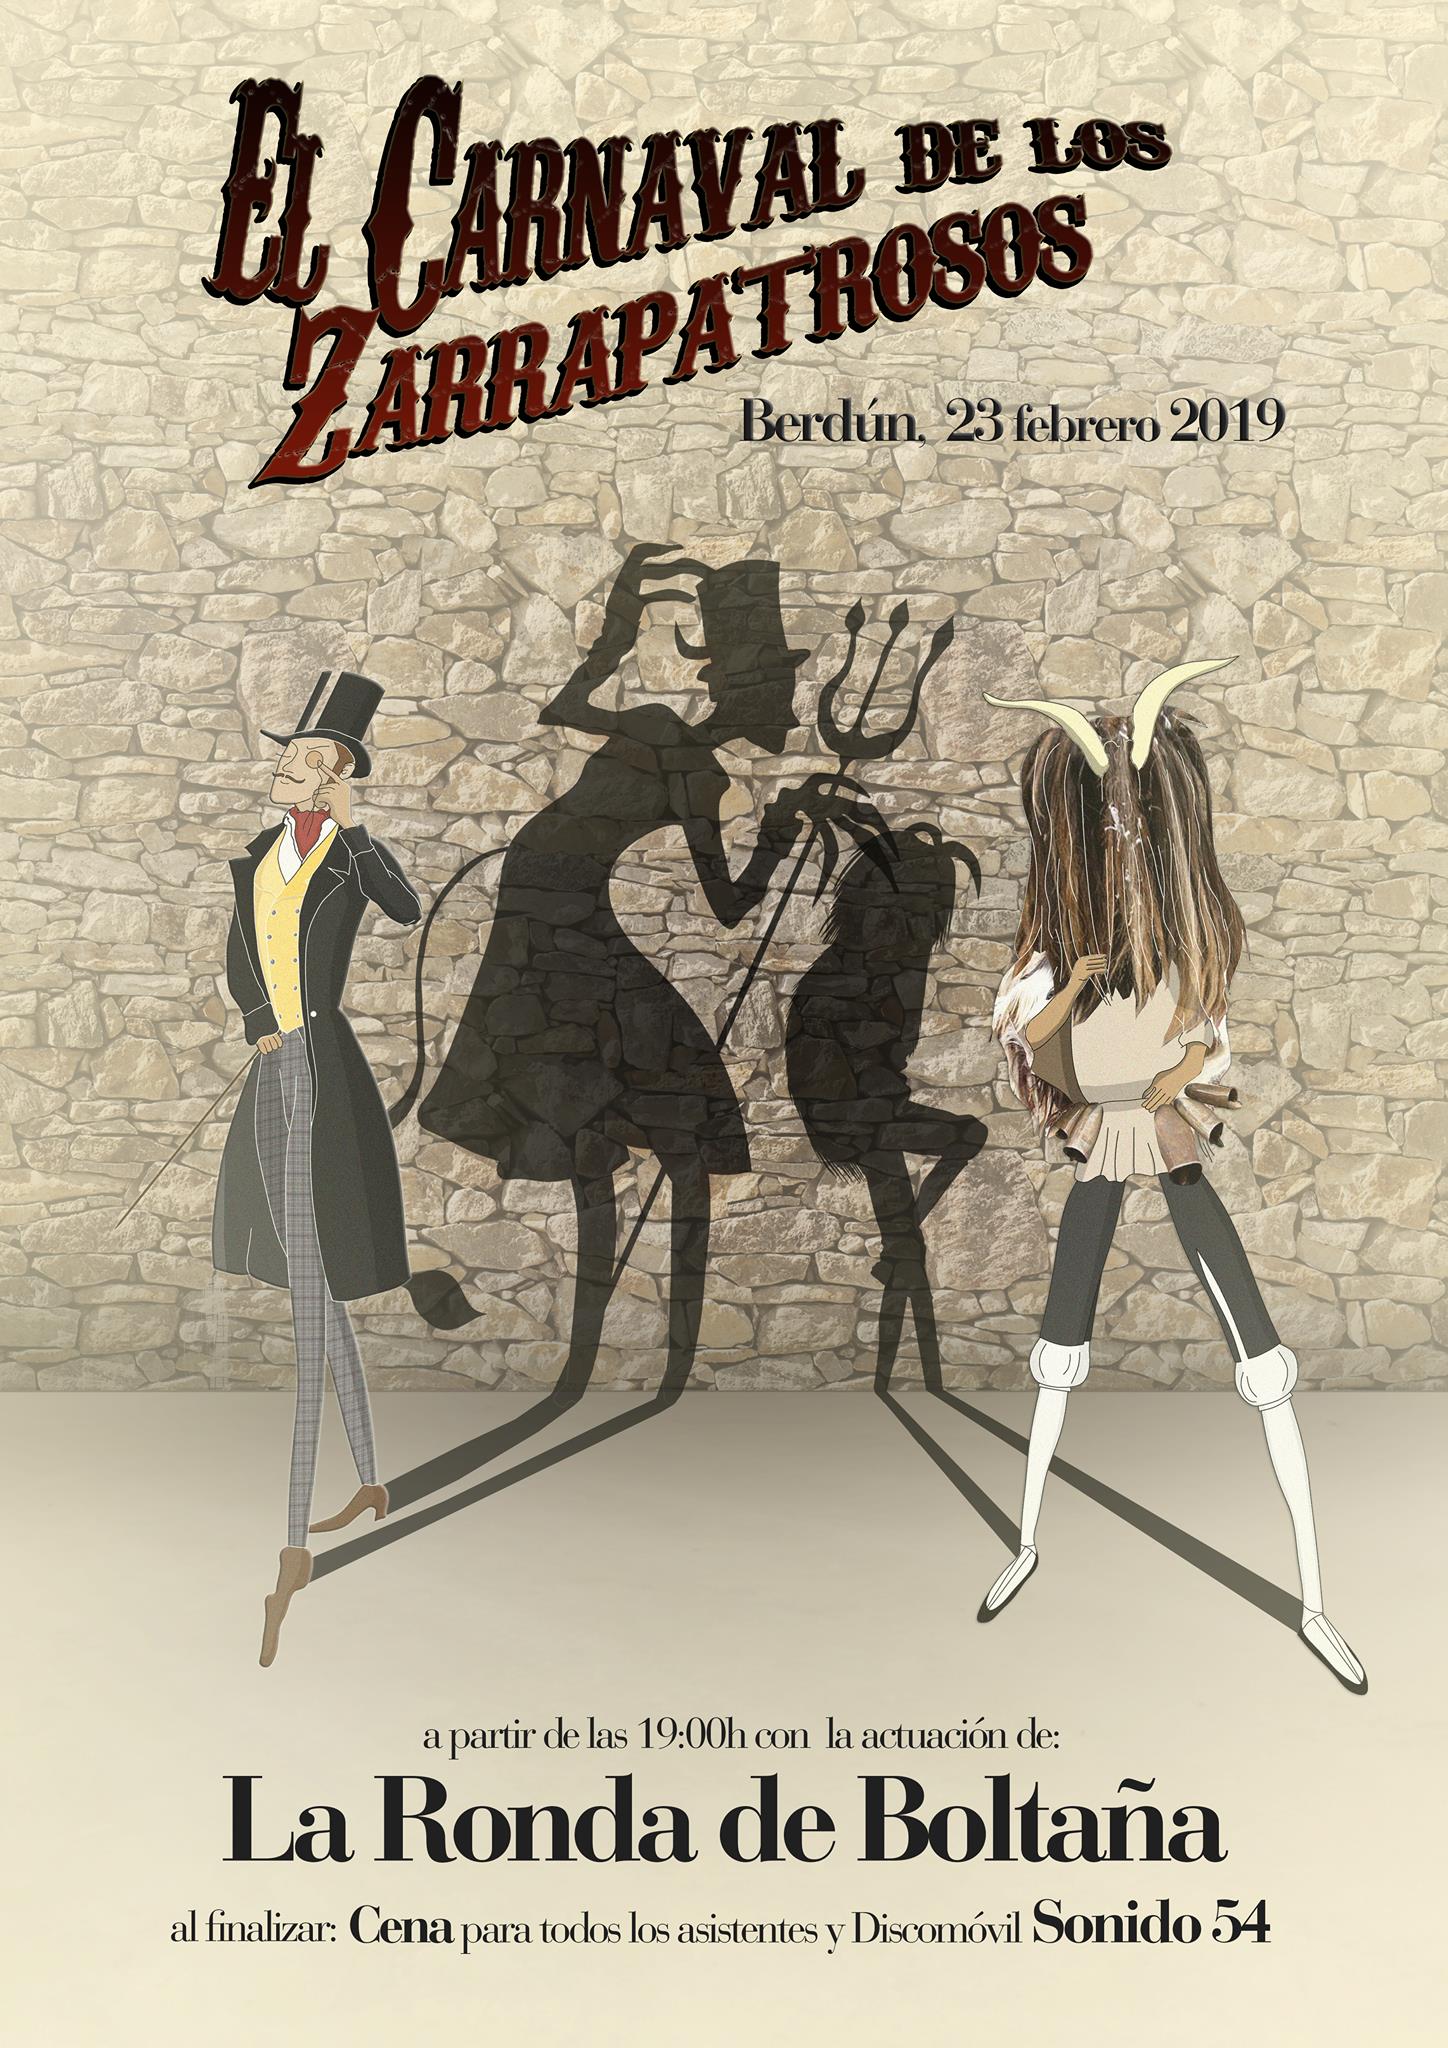 Berdún recupera el Carnaval de los Zarrapatrosos